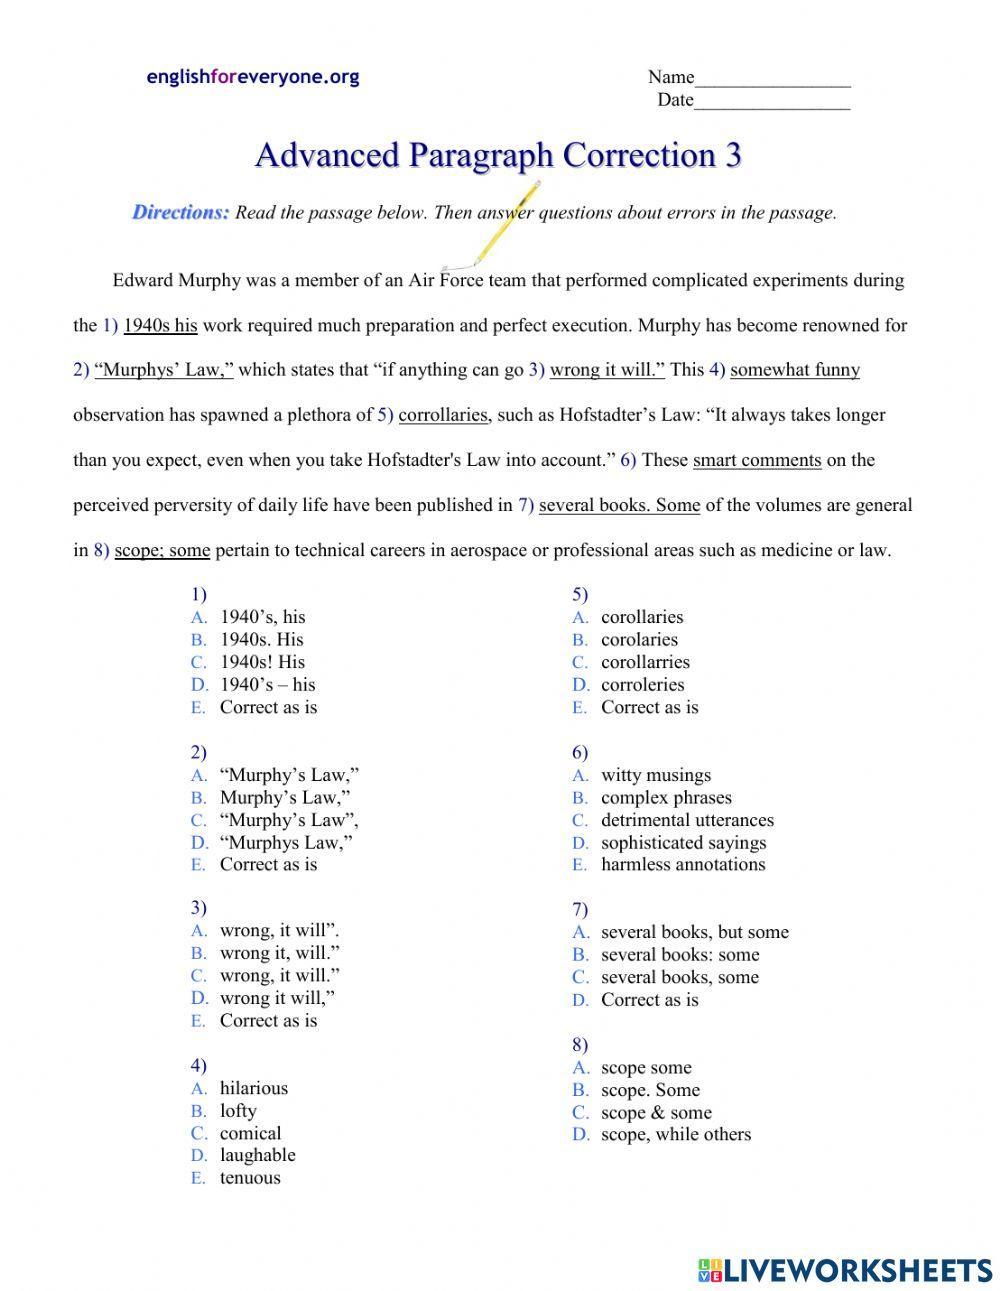 Advanced Paragraph Correction 3 worksheet | Live Worksheets